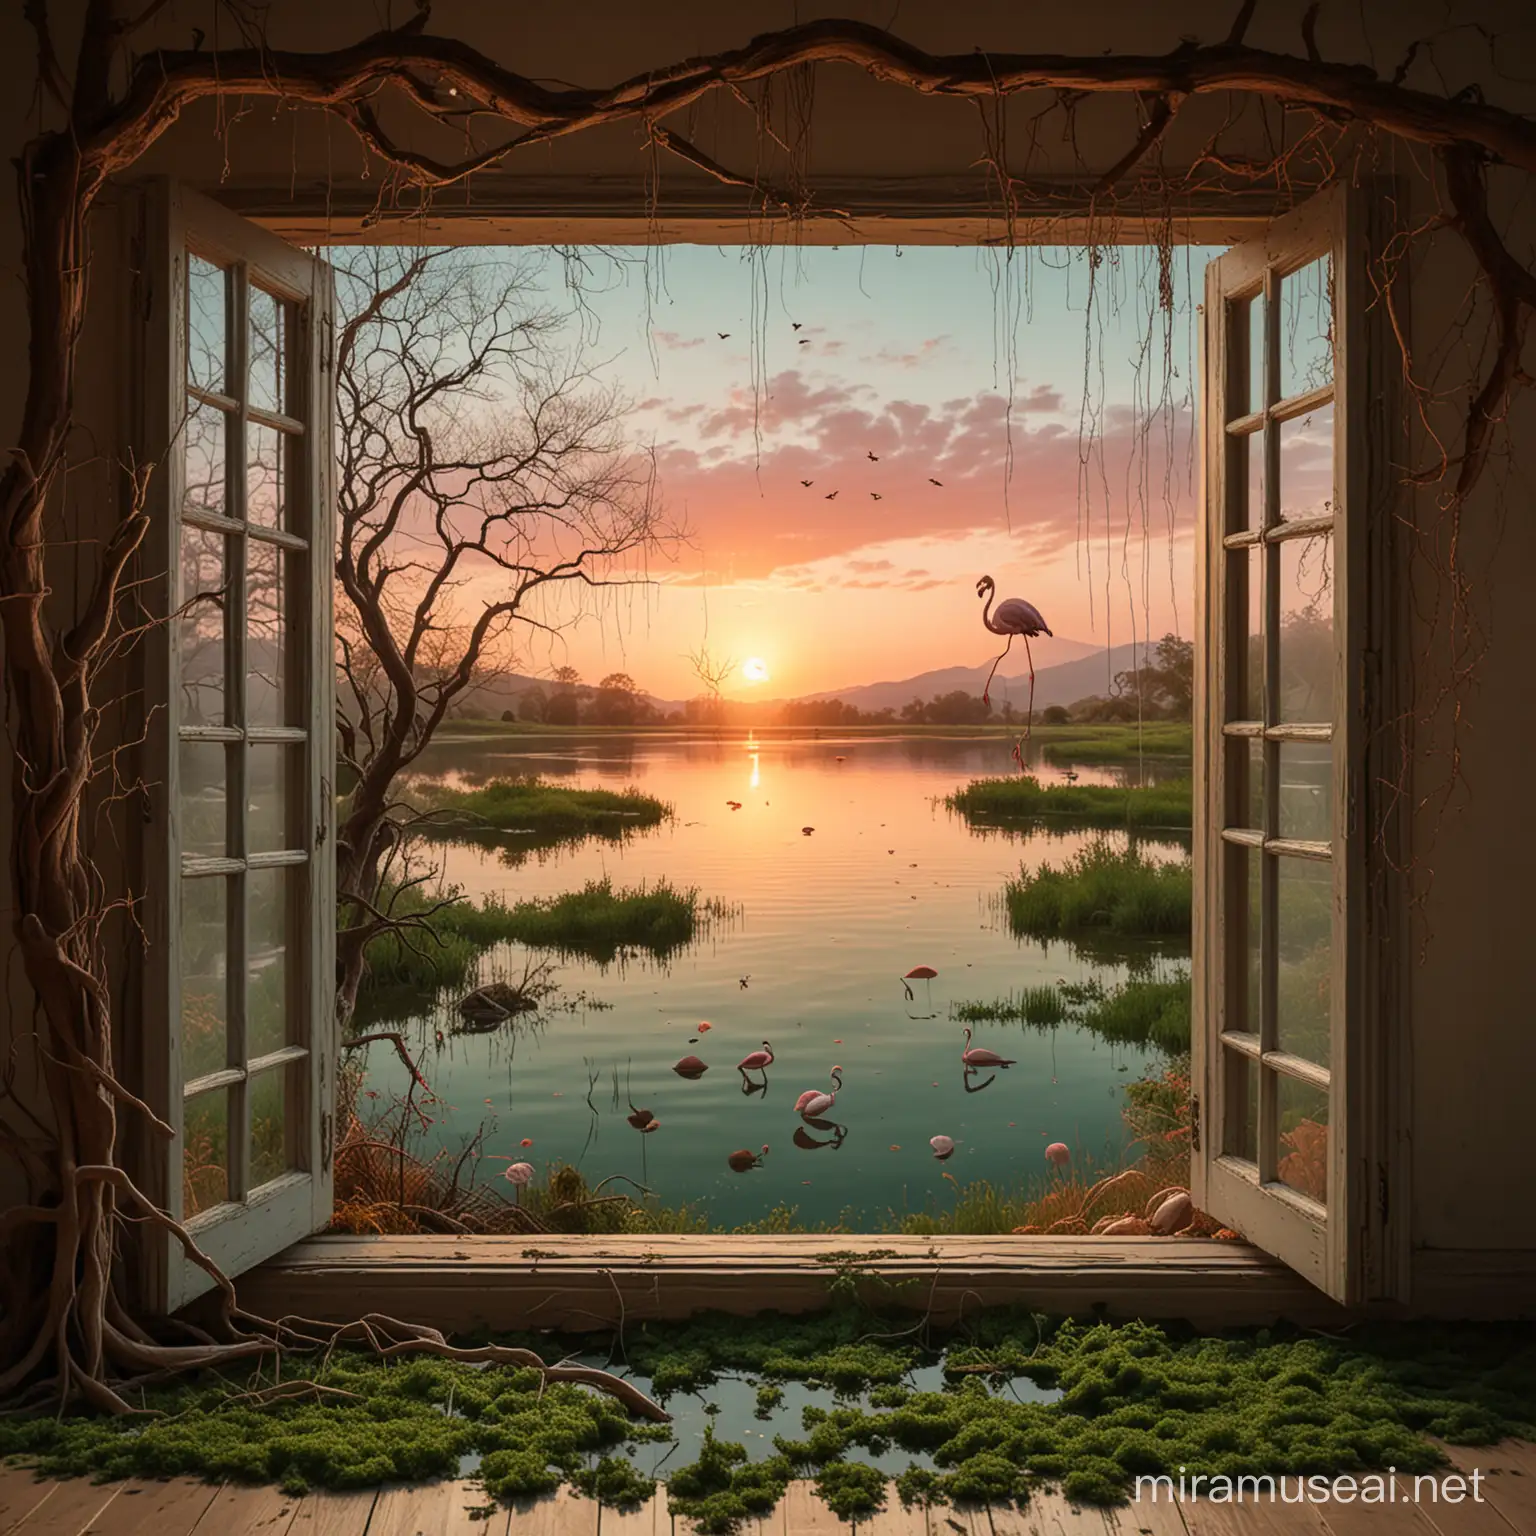 En un habitación hay una ventana de madera abierta. Por la ventana se ve un paisaje surrealista con un lago de aguas color verde. En el lago hay un flamenco con las alas y las patas en forma de tentáculos. Colgado de un árbol con las ramas secas hay un cerebro atrapado en una tela de araña. El suelo está lleno de champiñones. Hay una puesta de sol con el cielo rojizo